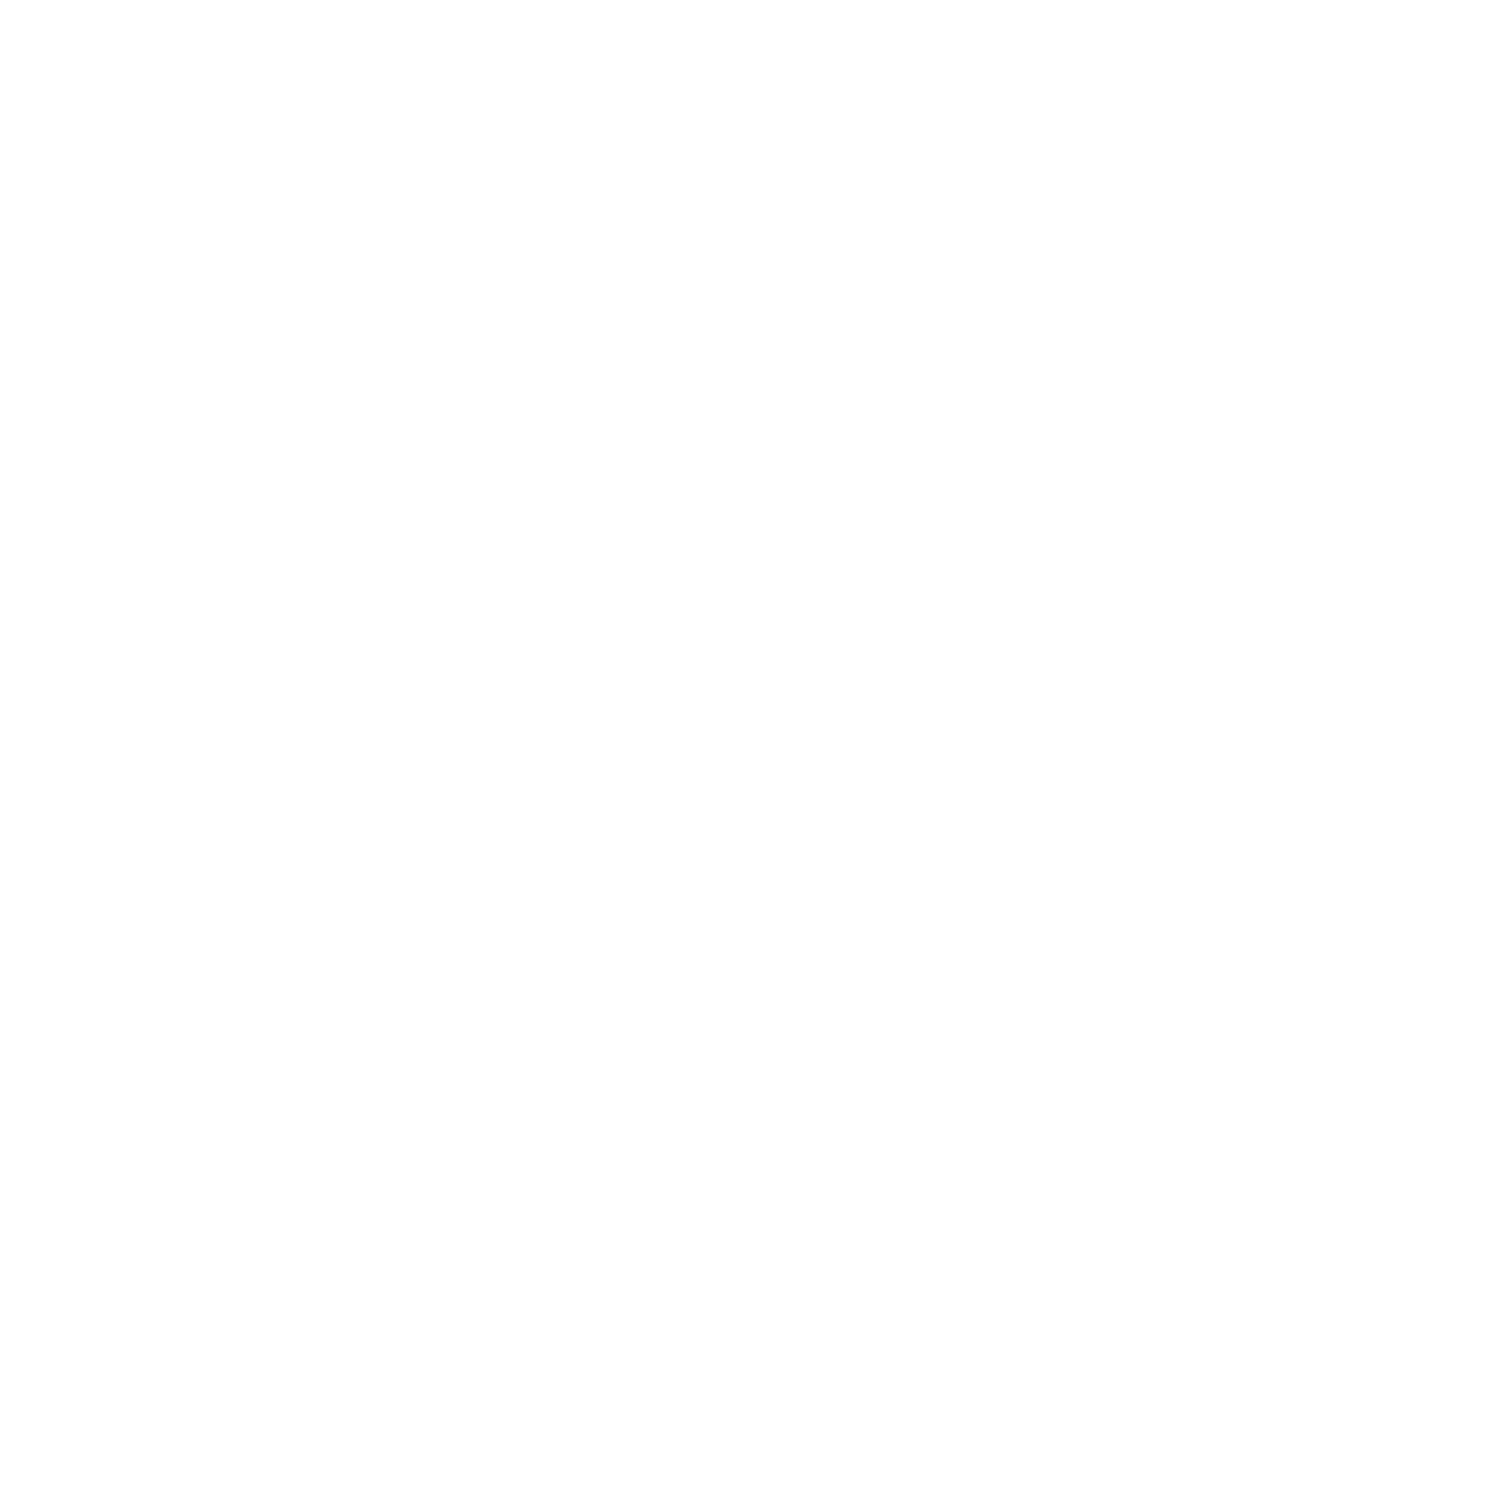 Jenny Teator